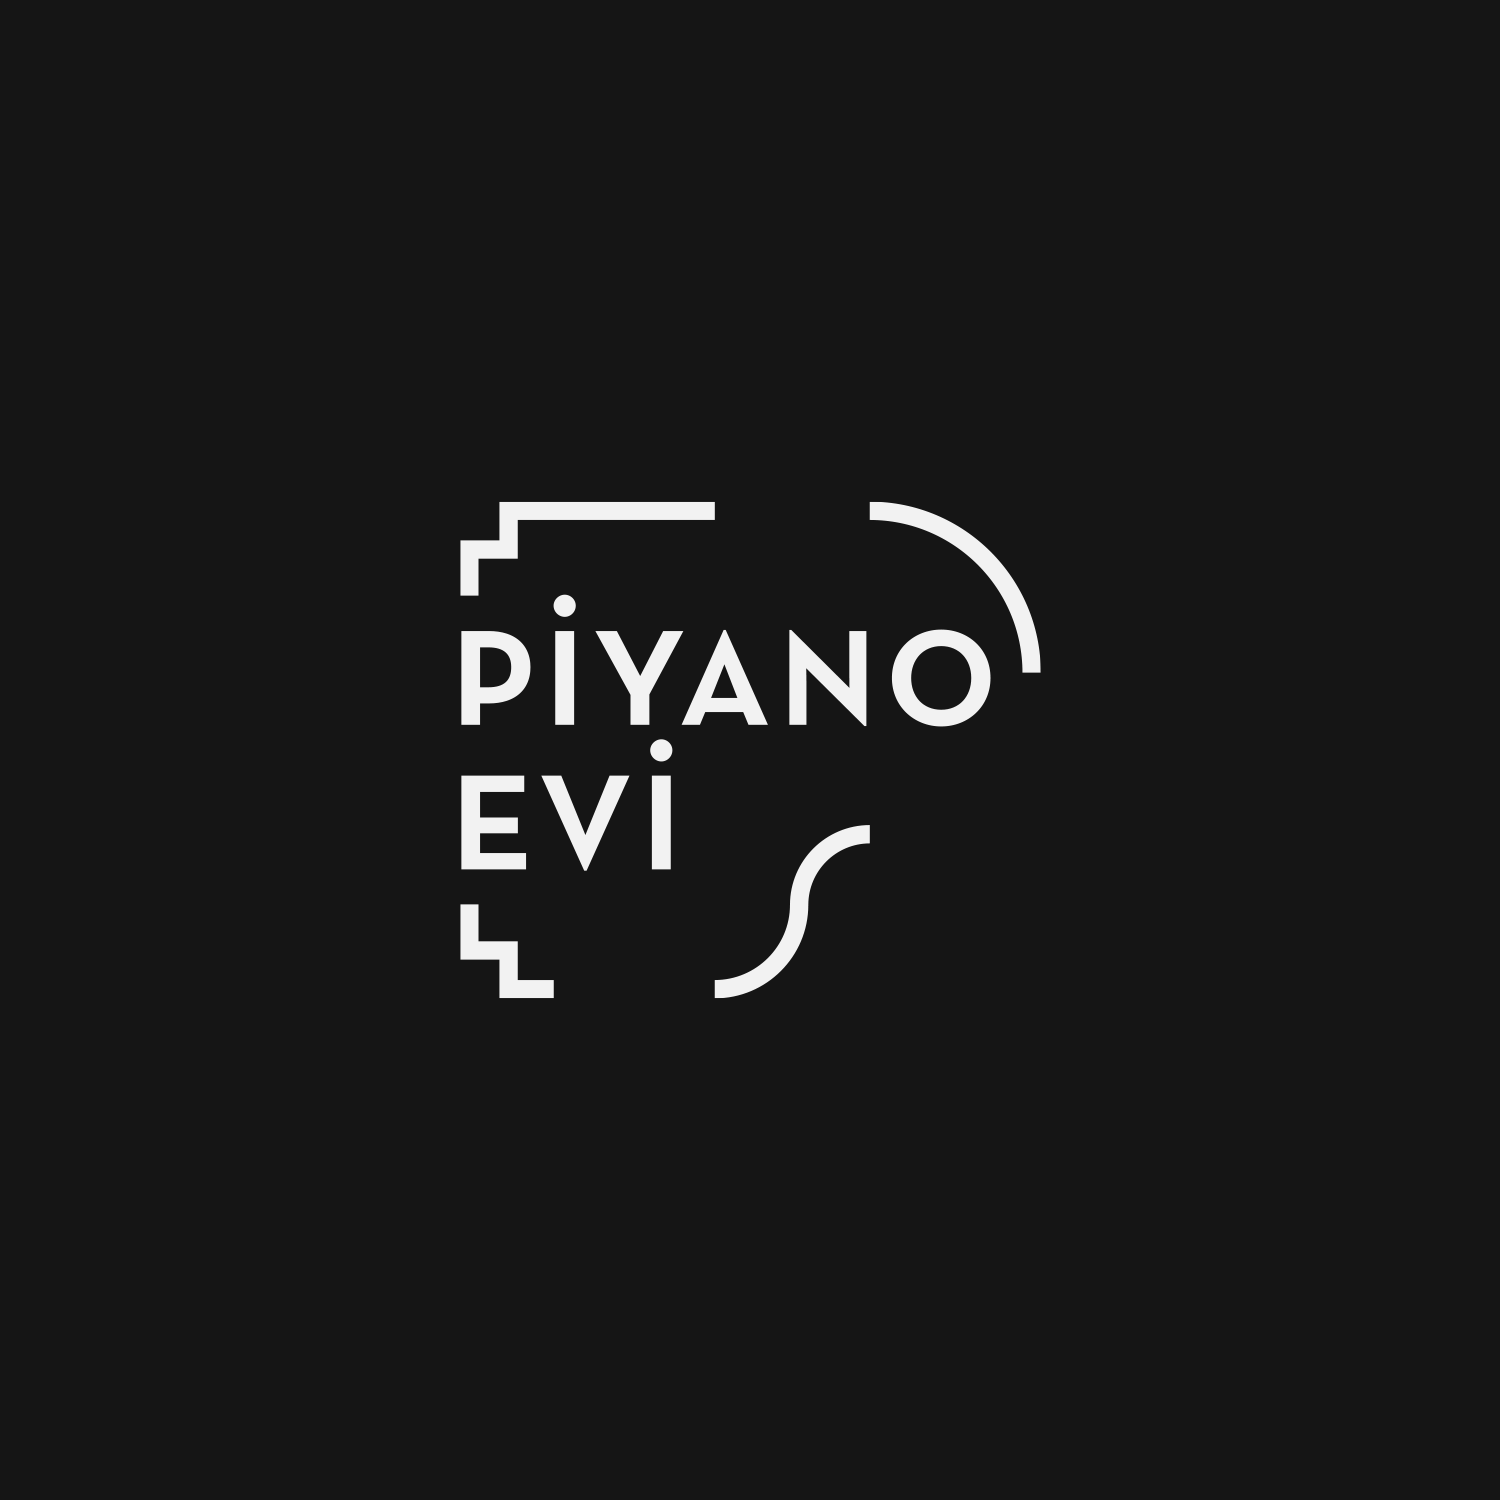 piyano_logo_01